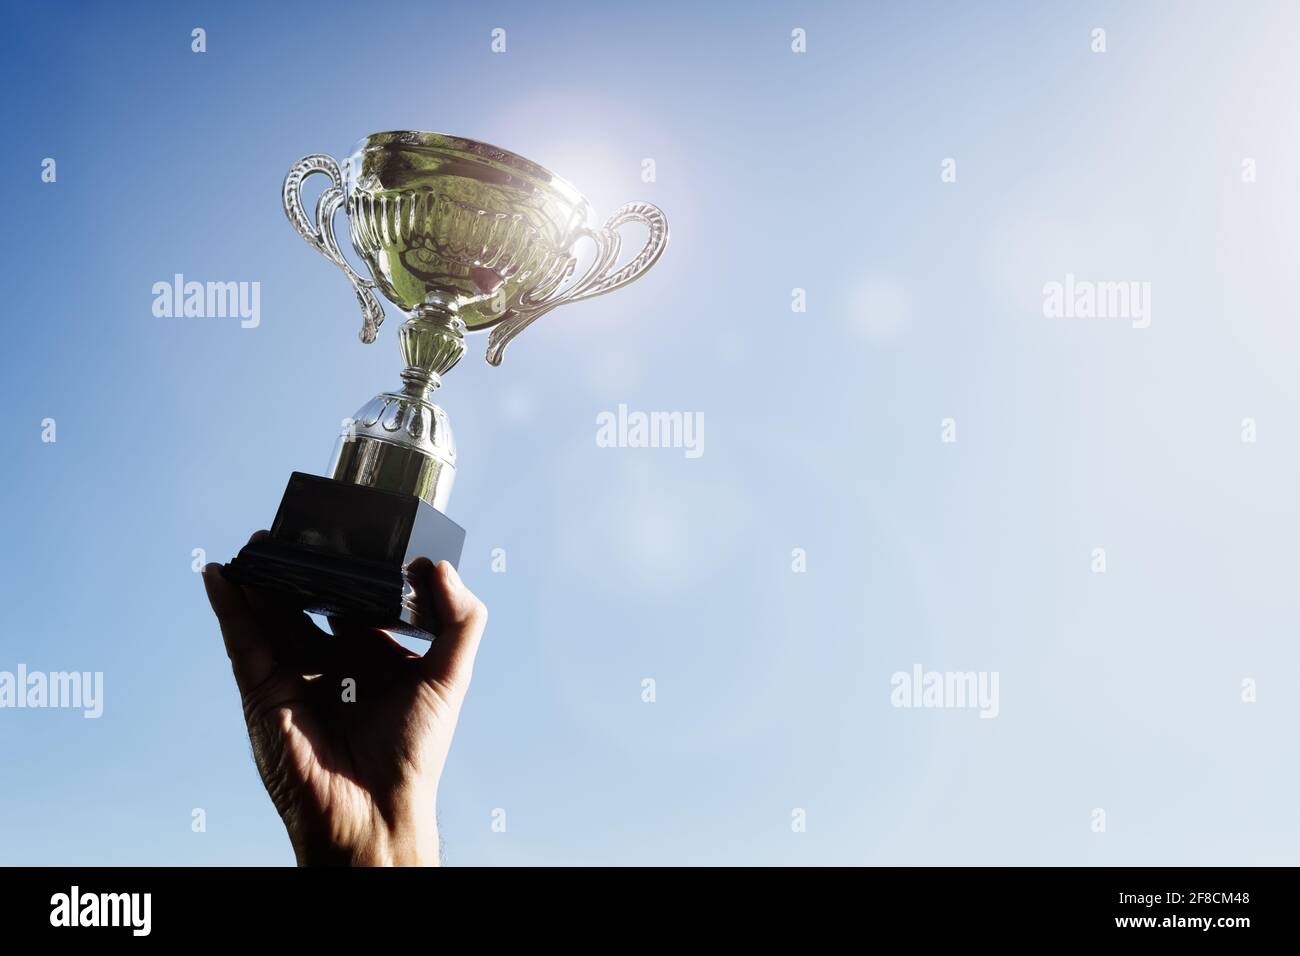 Auszeichnung für Erfolg oder sportliche Championship gewinnen den ersten Platz feiern mit Trophäe Stockfoto